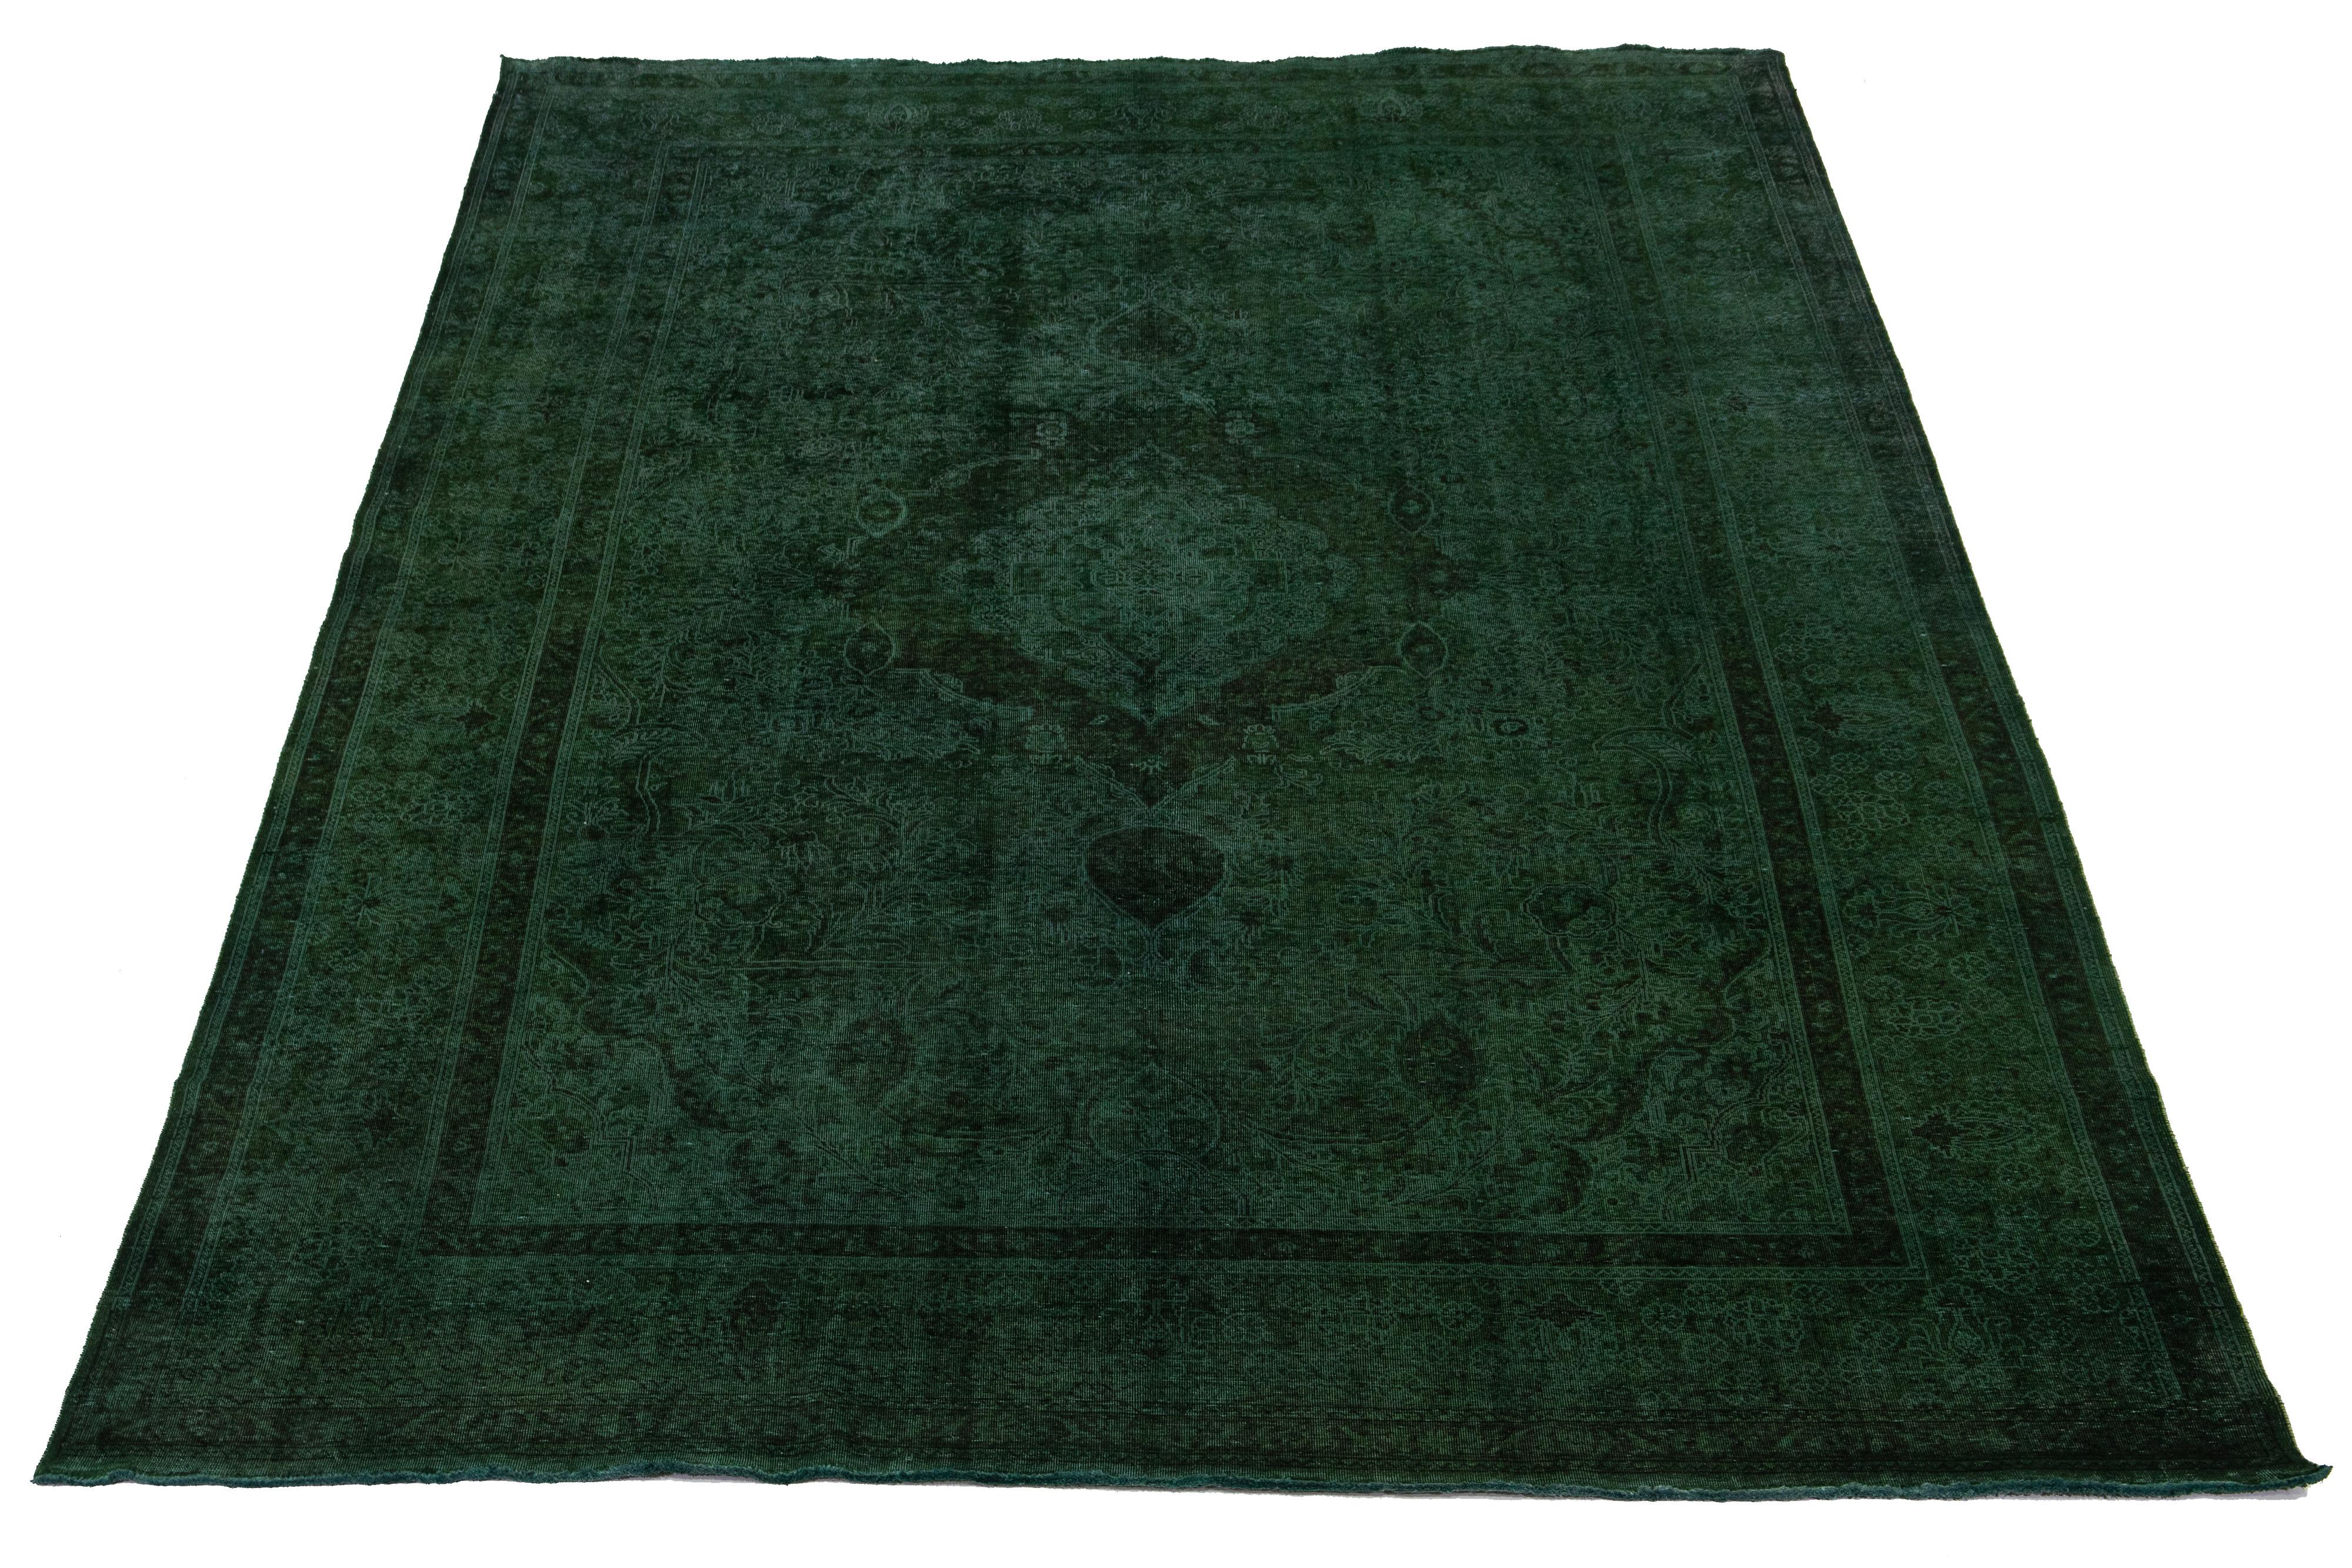 Il s'agit d'un tapis persan vintage en laine nouée à la main avec un champ vert. Il présente un motif floral en médaillon avec des accents bruns.

Ce tapis mesure 10'2'' x 15'9